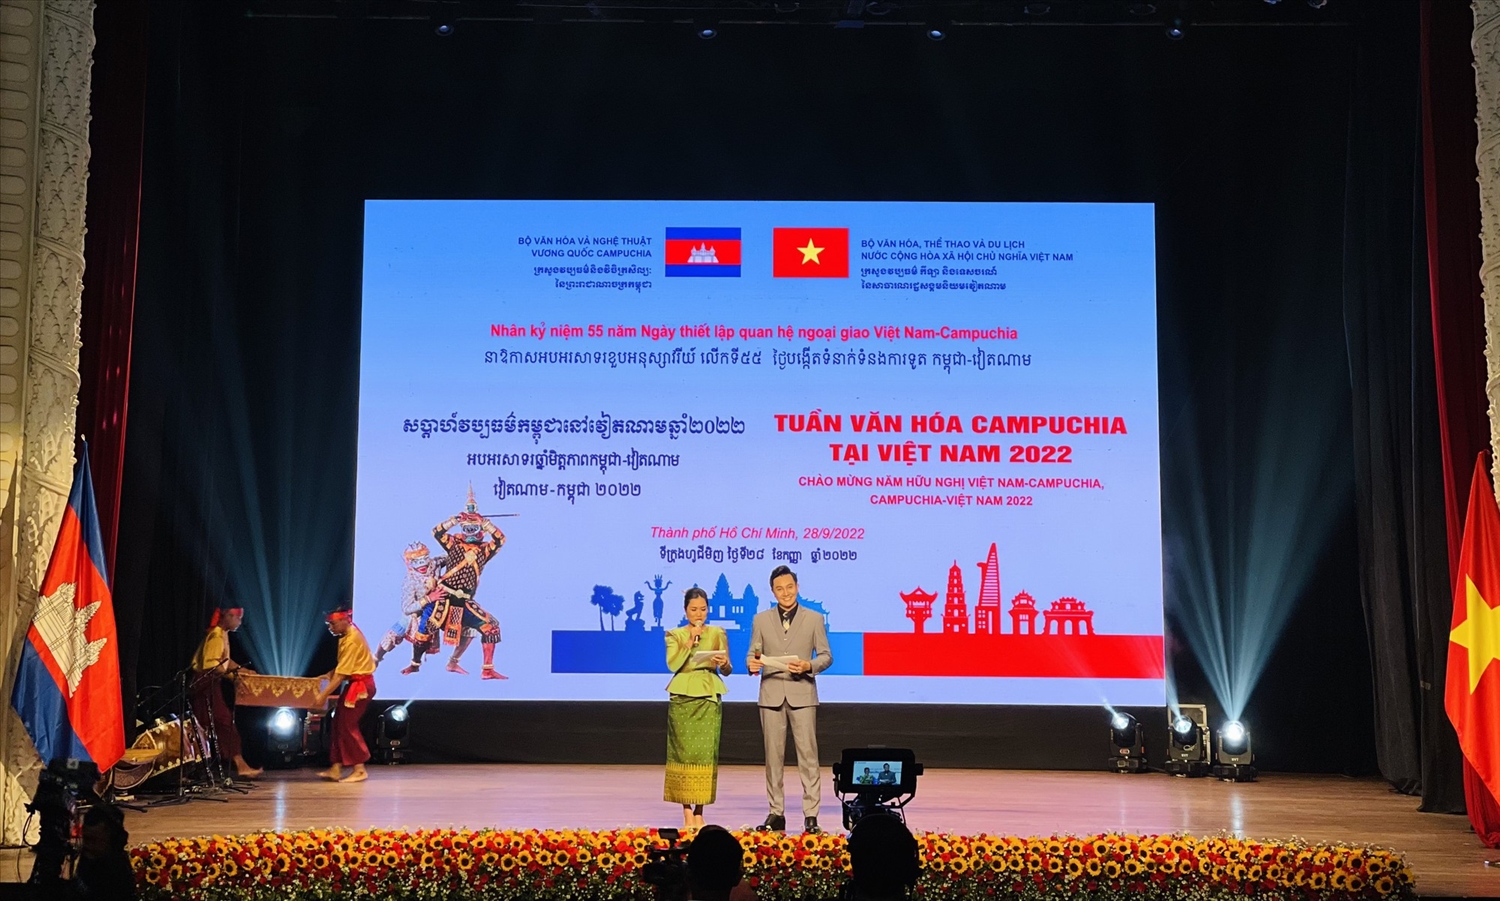 Lễ khai mạc Tuần Văn hoá Campuchia tại Việt Nam năm 2022 được tổ chức long trọng tại Nhà hát TP.HCM.